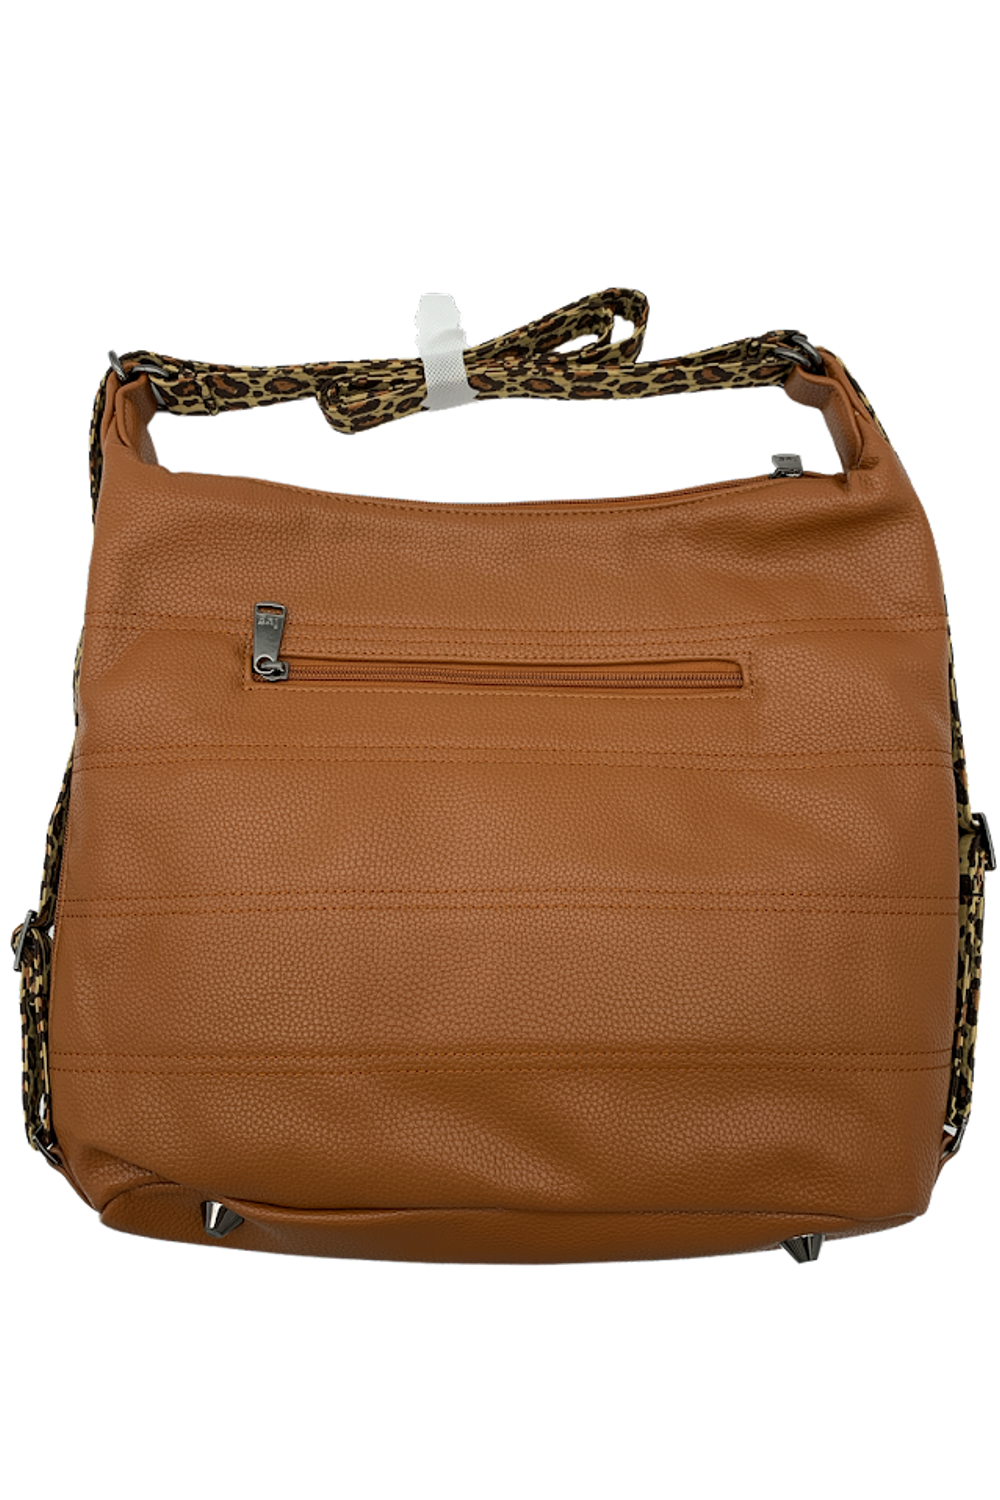 Zipliner Classic VL Convertible Hobo Bag 